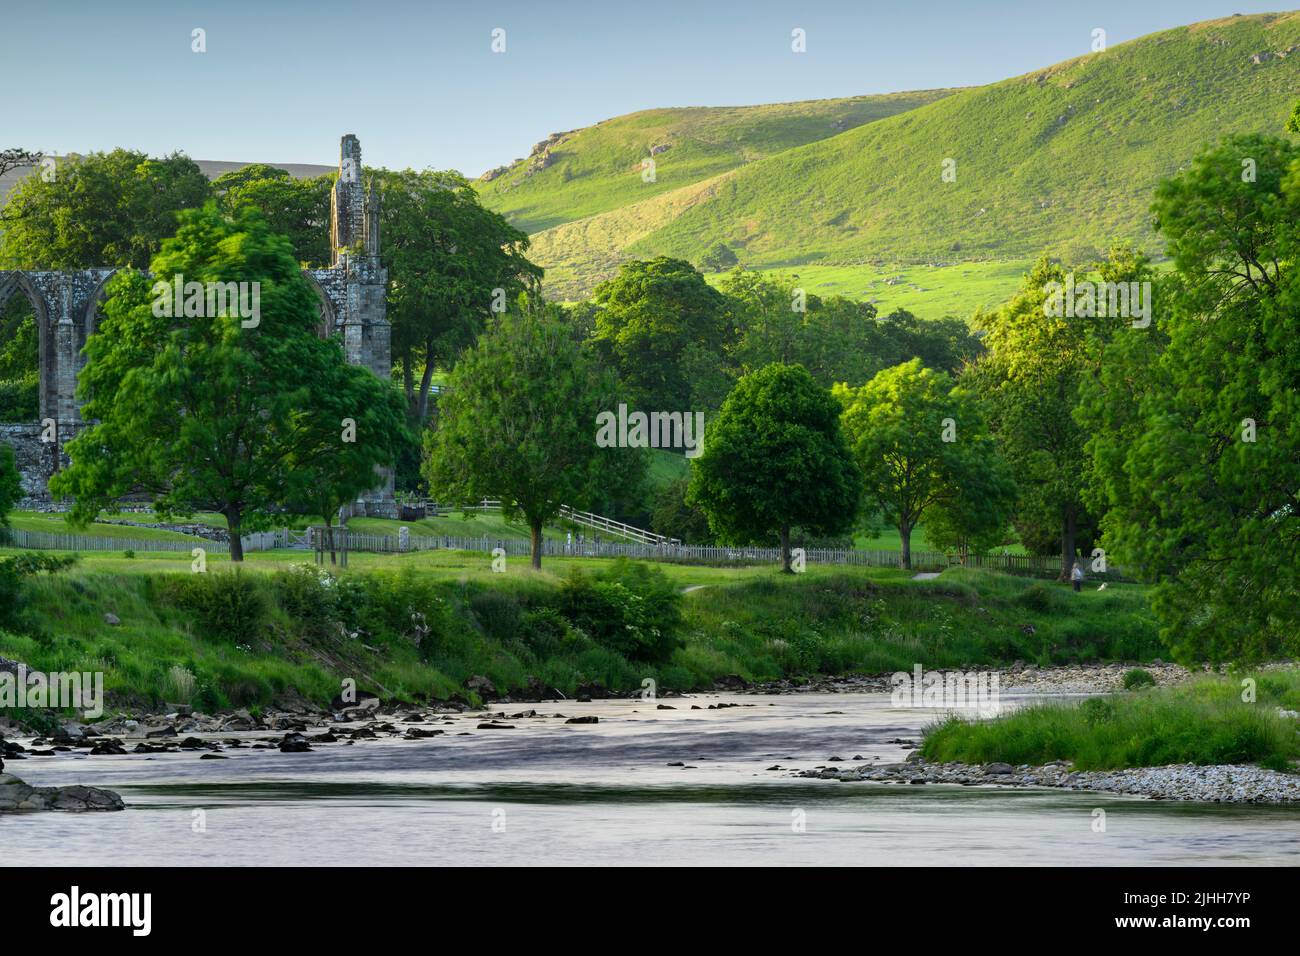 Bolton Abbey (wunderschöne historische Ruine am Flussufer, gewundener Fluss, sonnenbeschienene Hügel, Sommerabend) - Wharfedale Yorkshire Dales, England, Großbritannien Stockfoto